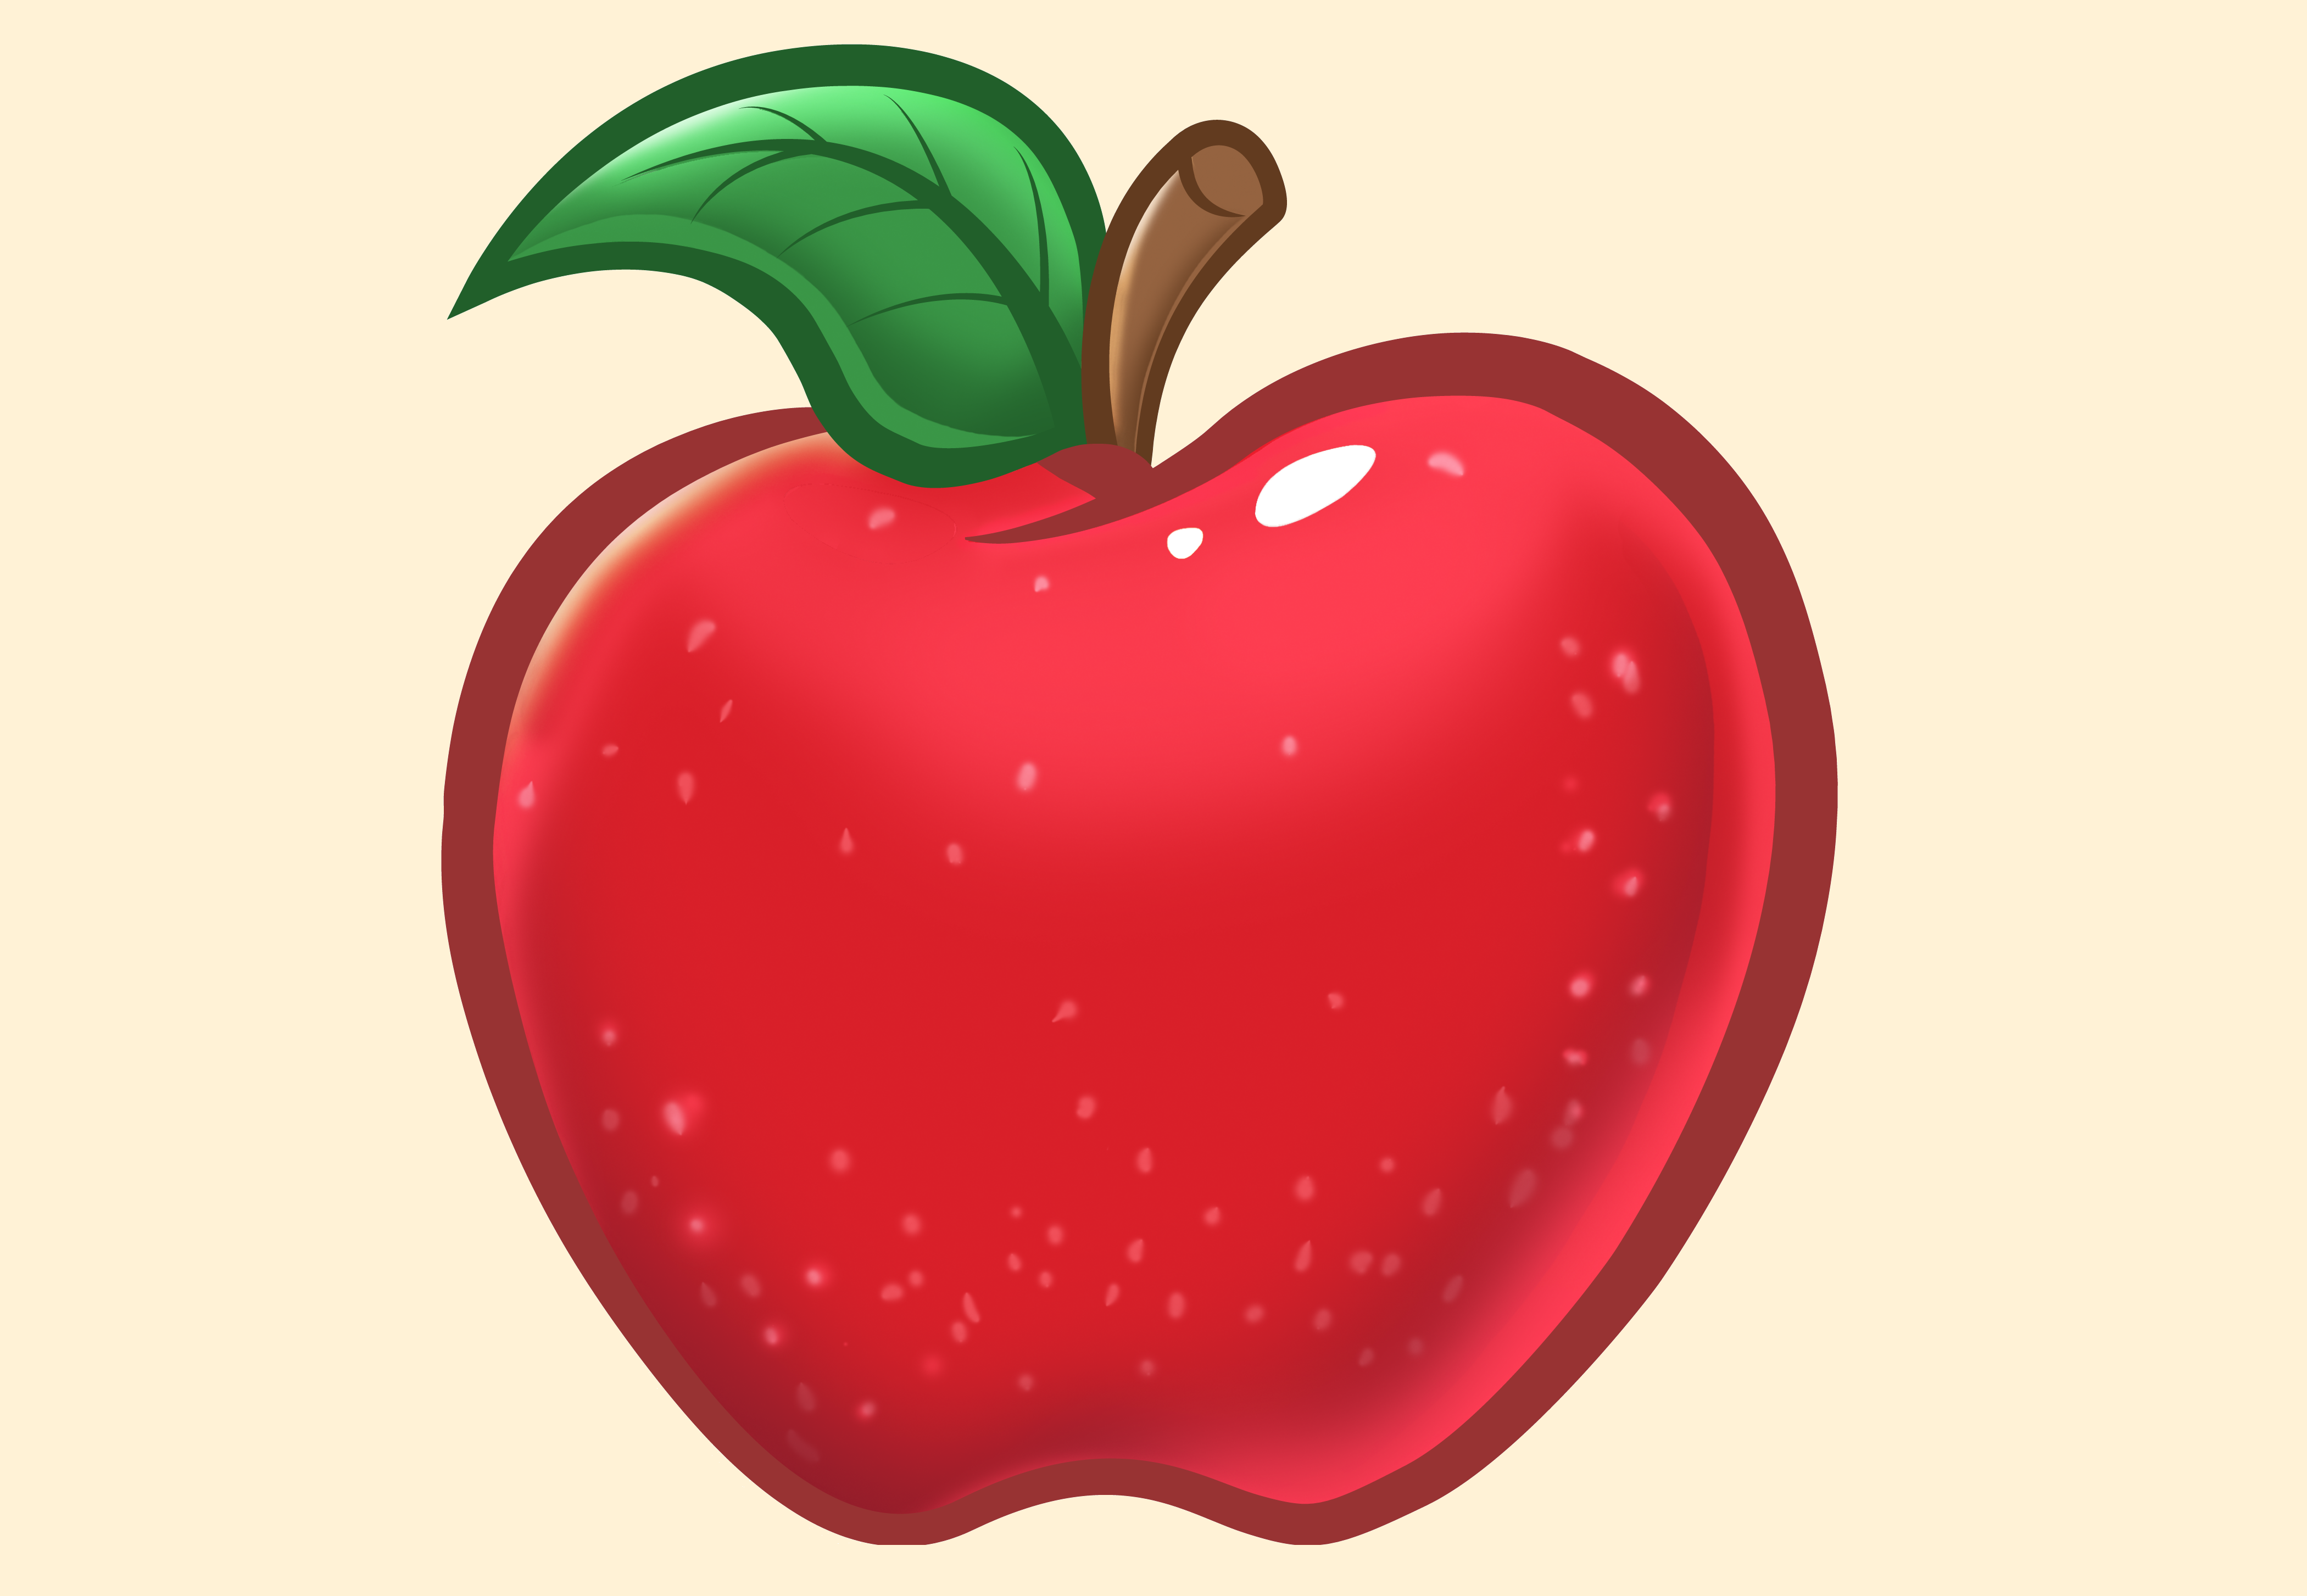 Vẽ một quả táo đẹp